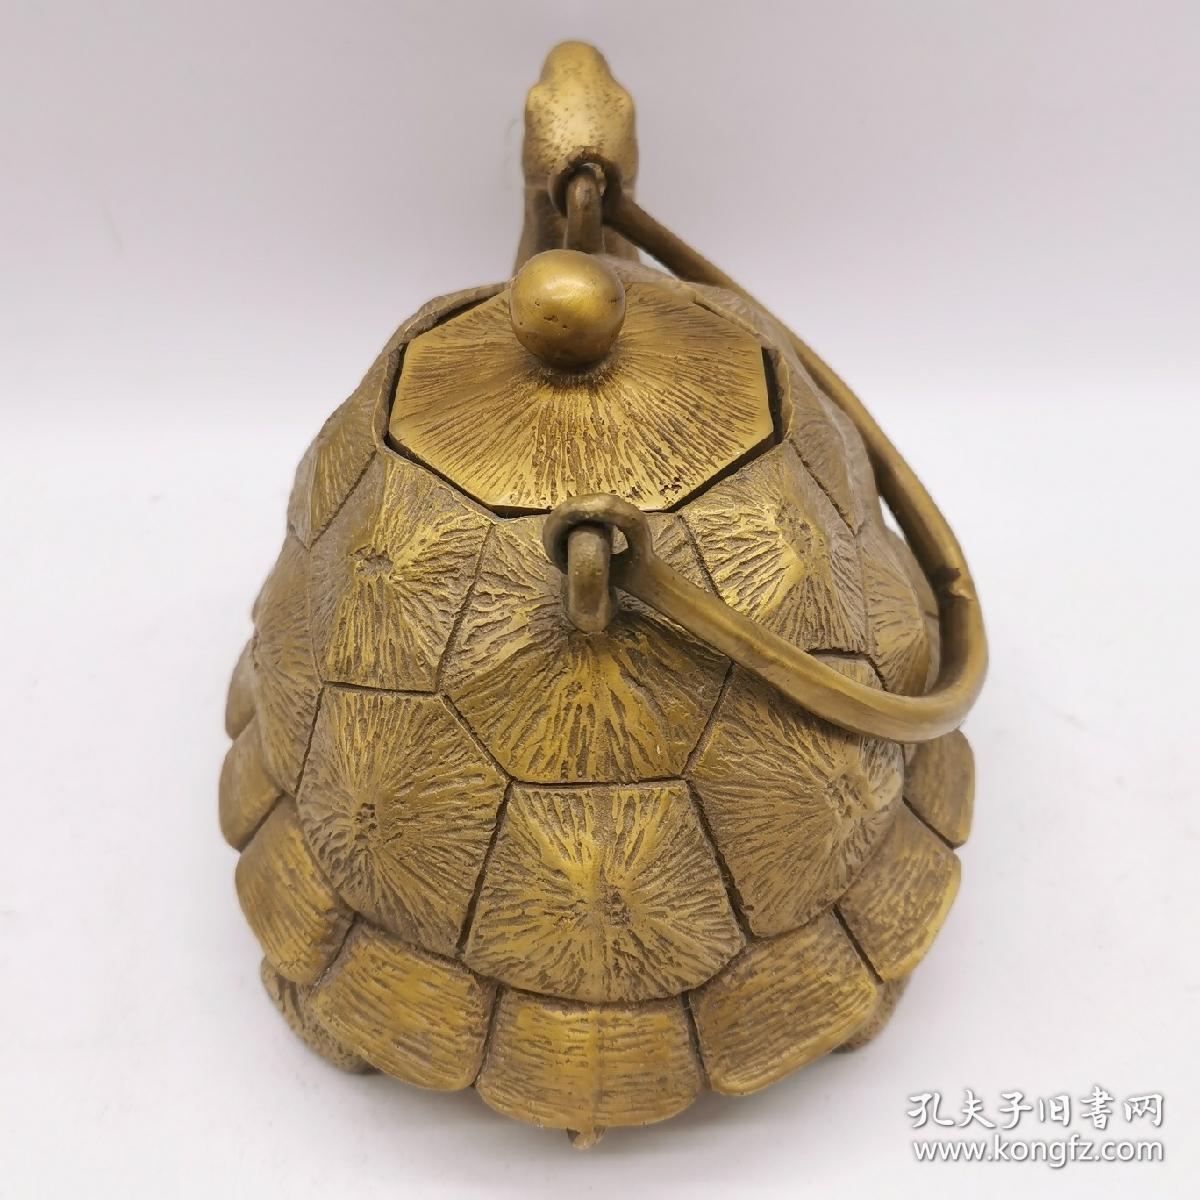 古玩铜器收藏，黄铜长寿龟壶，长命百岁，富贵荣华，造型独特，工艺精湛，包浆浓郁！